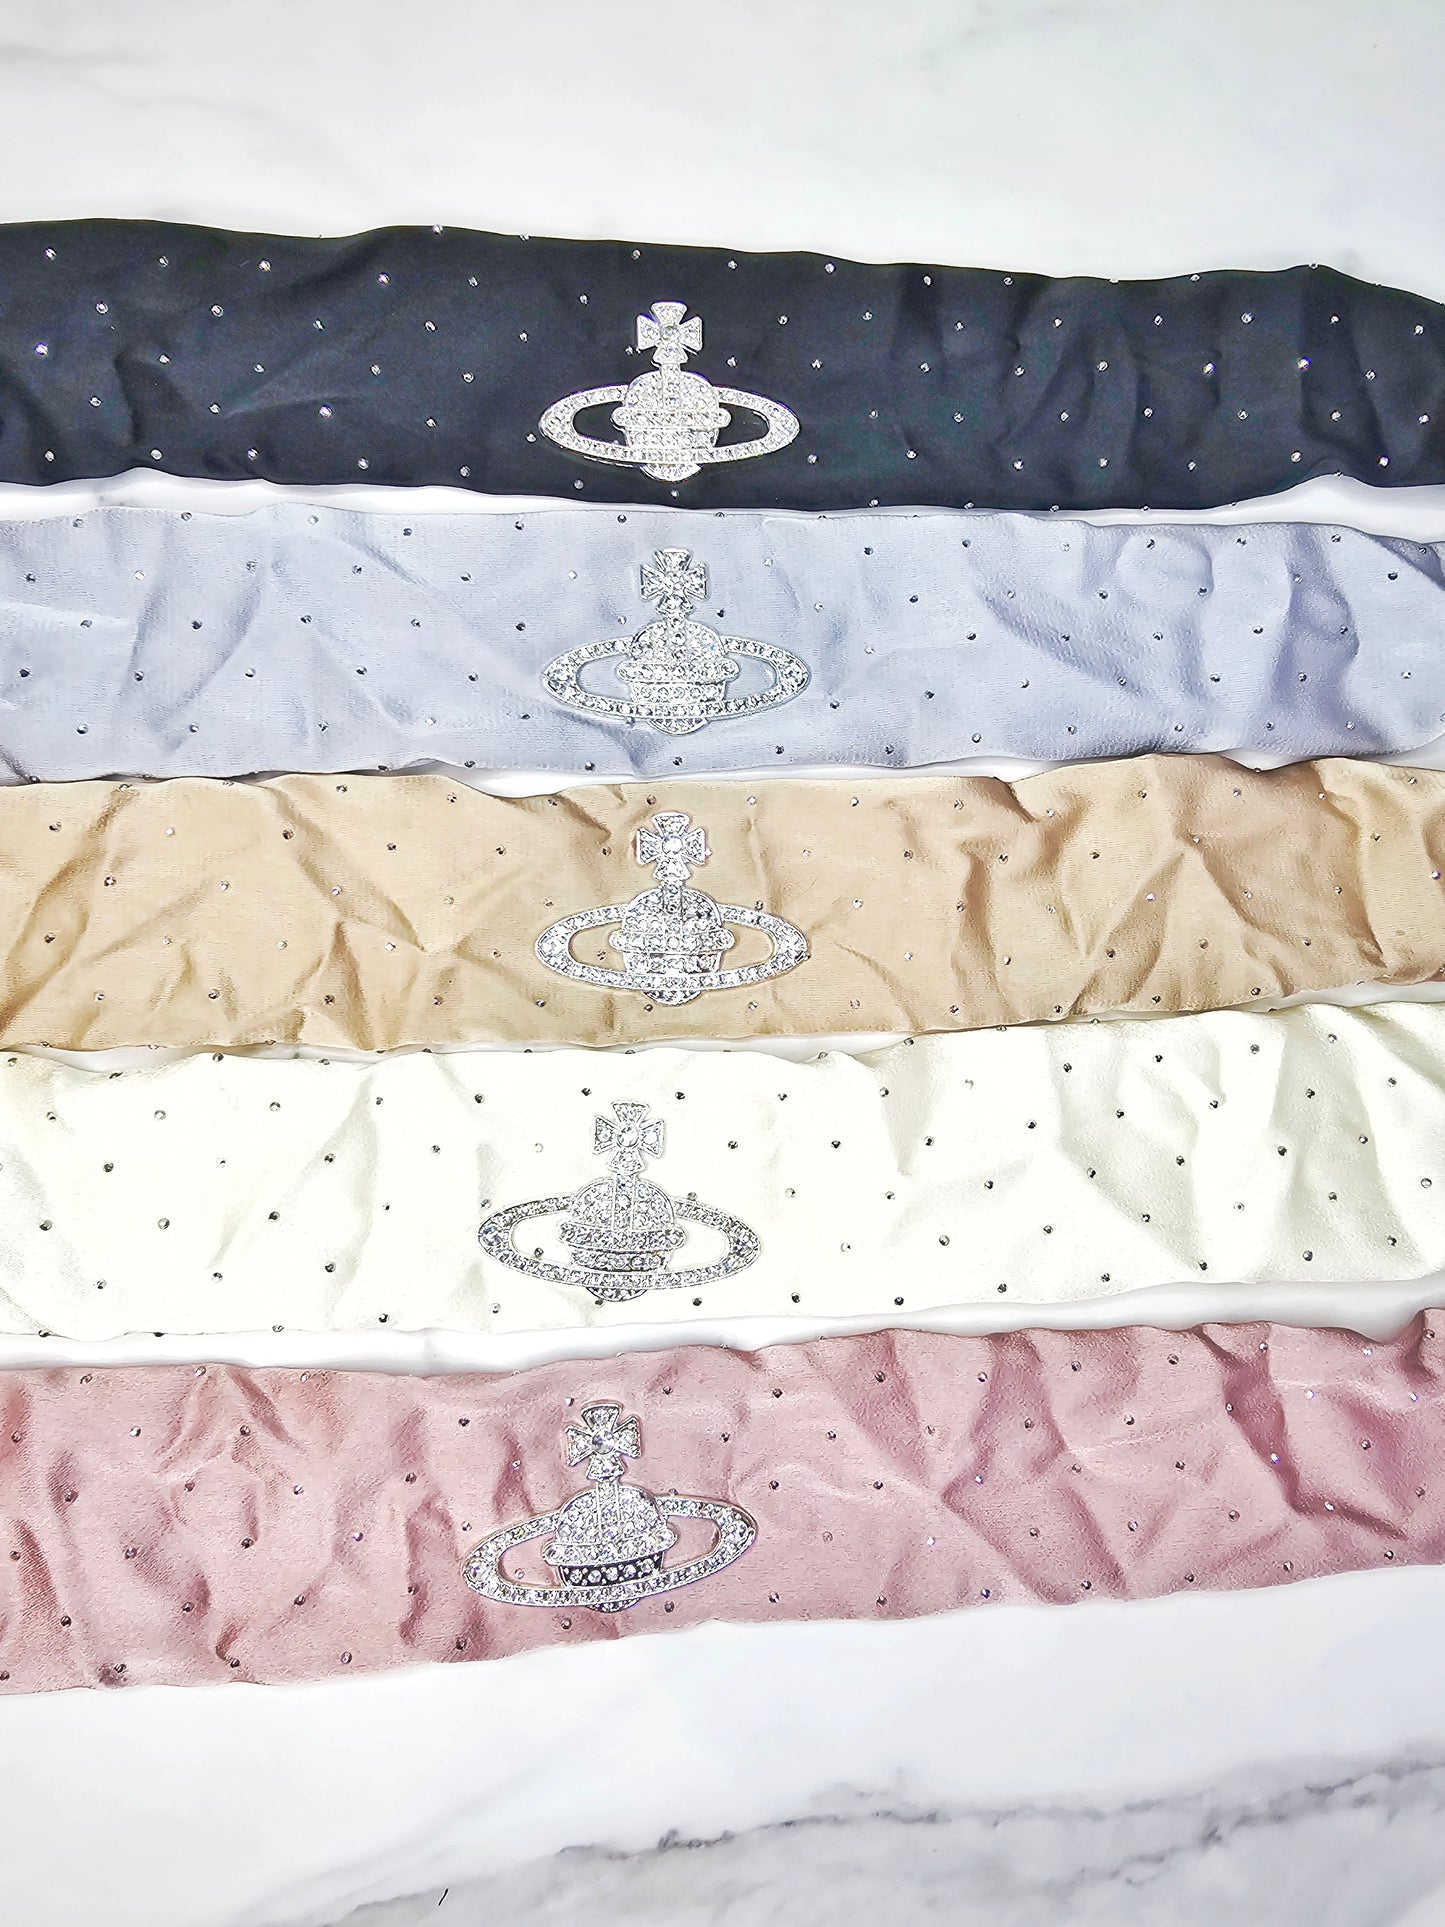 diamanté vivian croc strap covers, come in pairs!